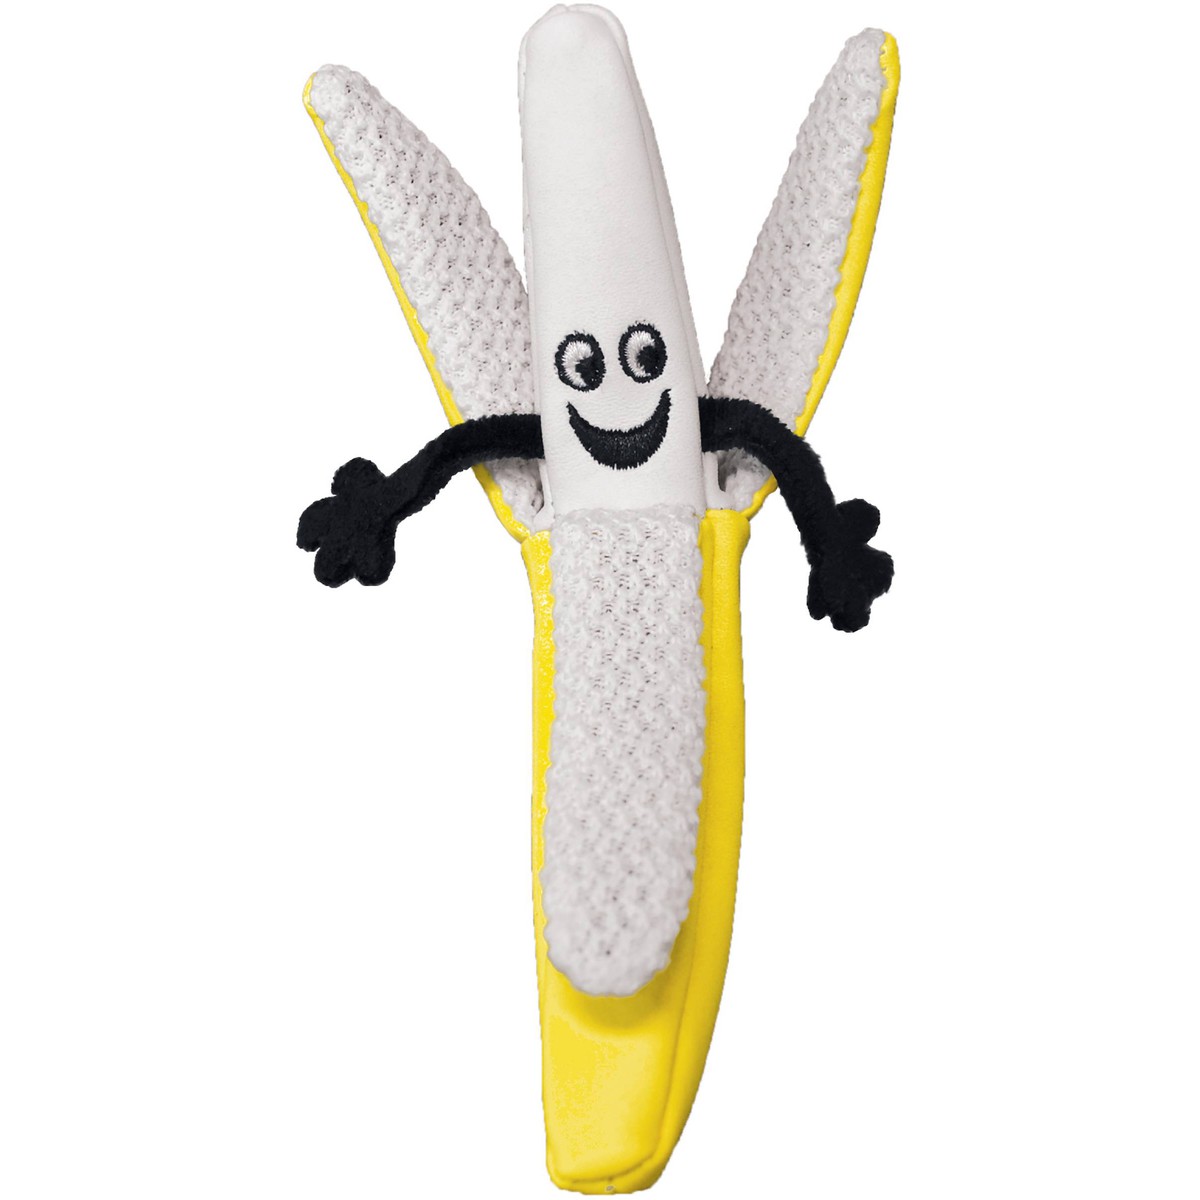   KONG Better Buzz Banana Assorted  